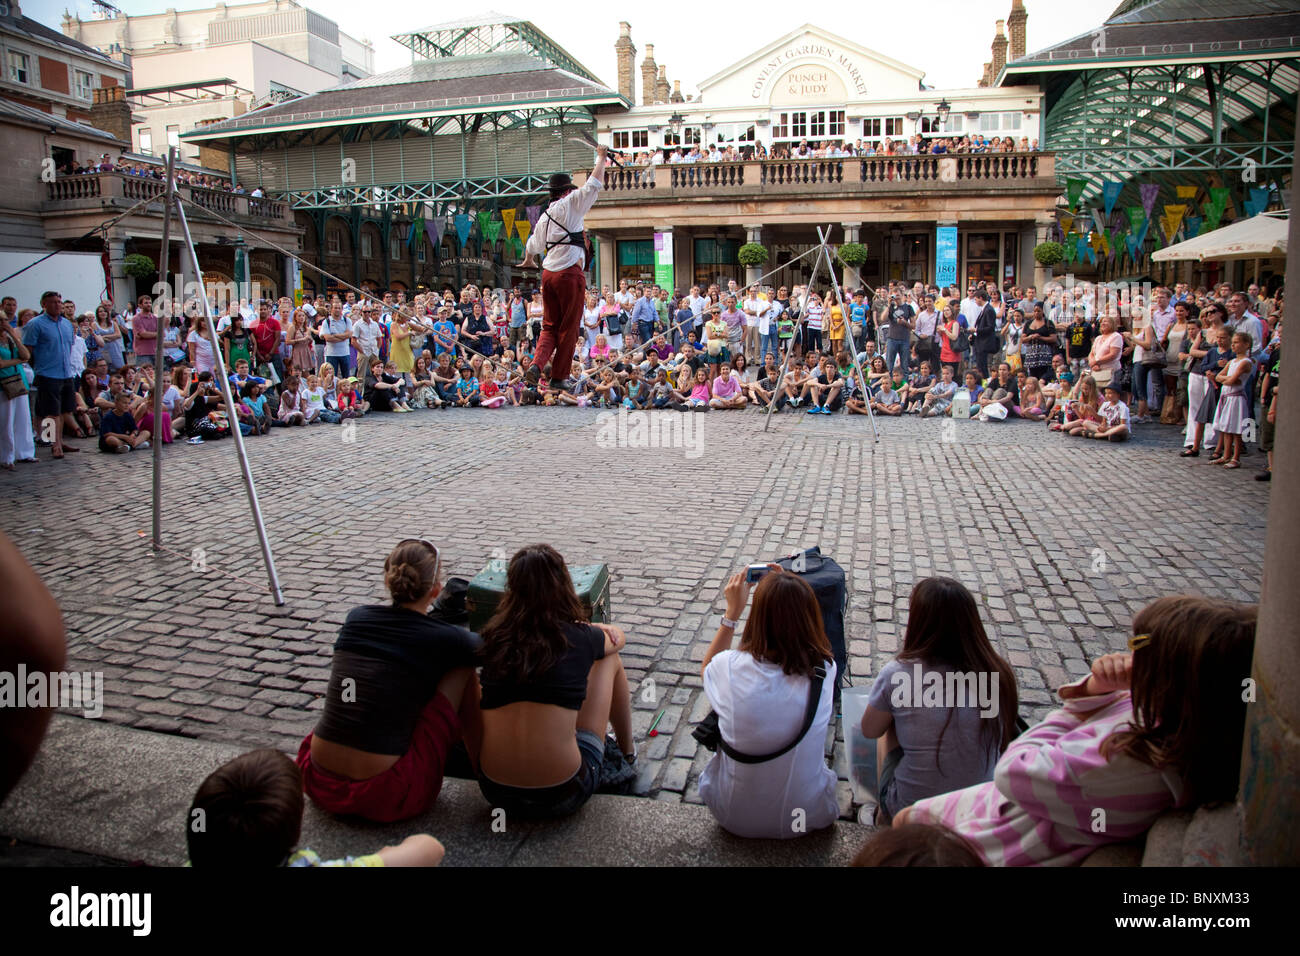 La folla a guardare la strada esecutori al Covent Garden di Londra, Inghilterra Foto Stock